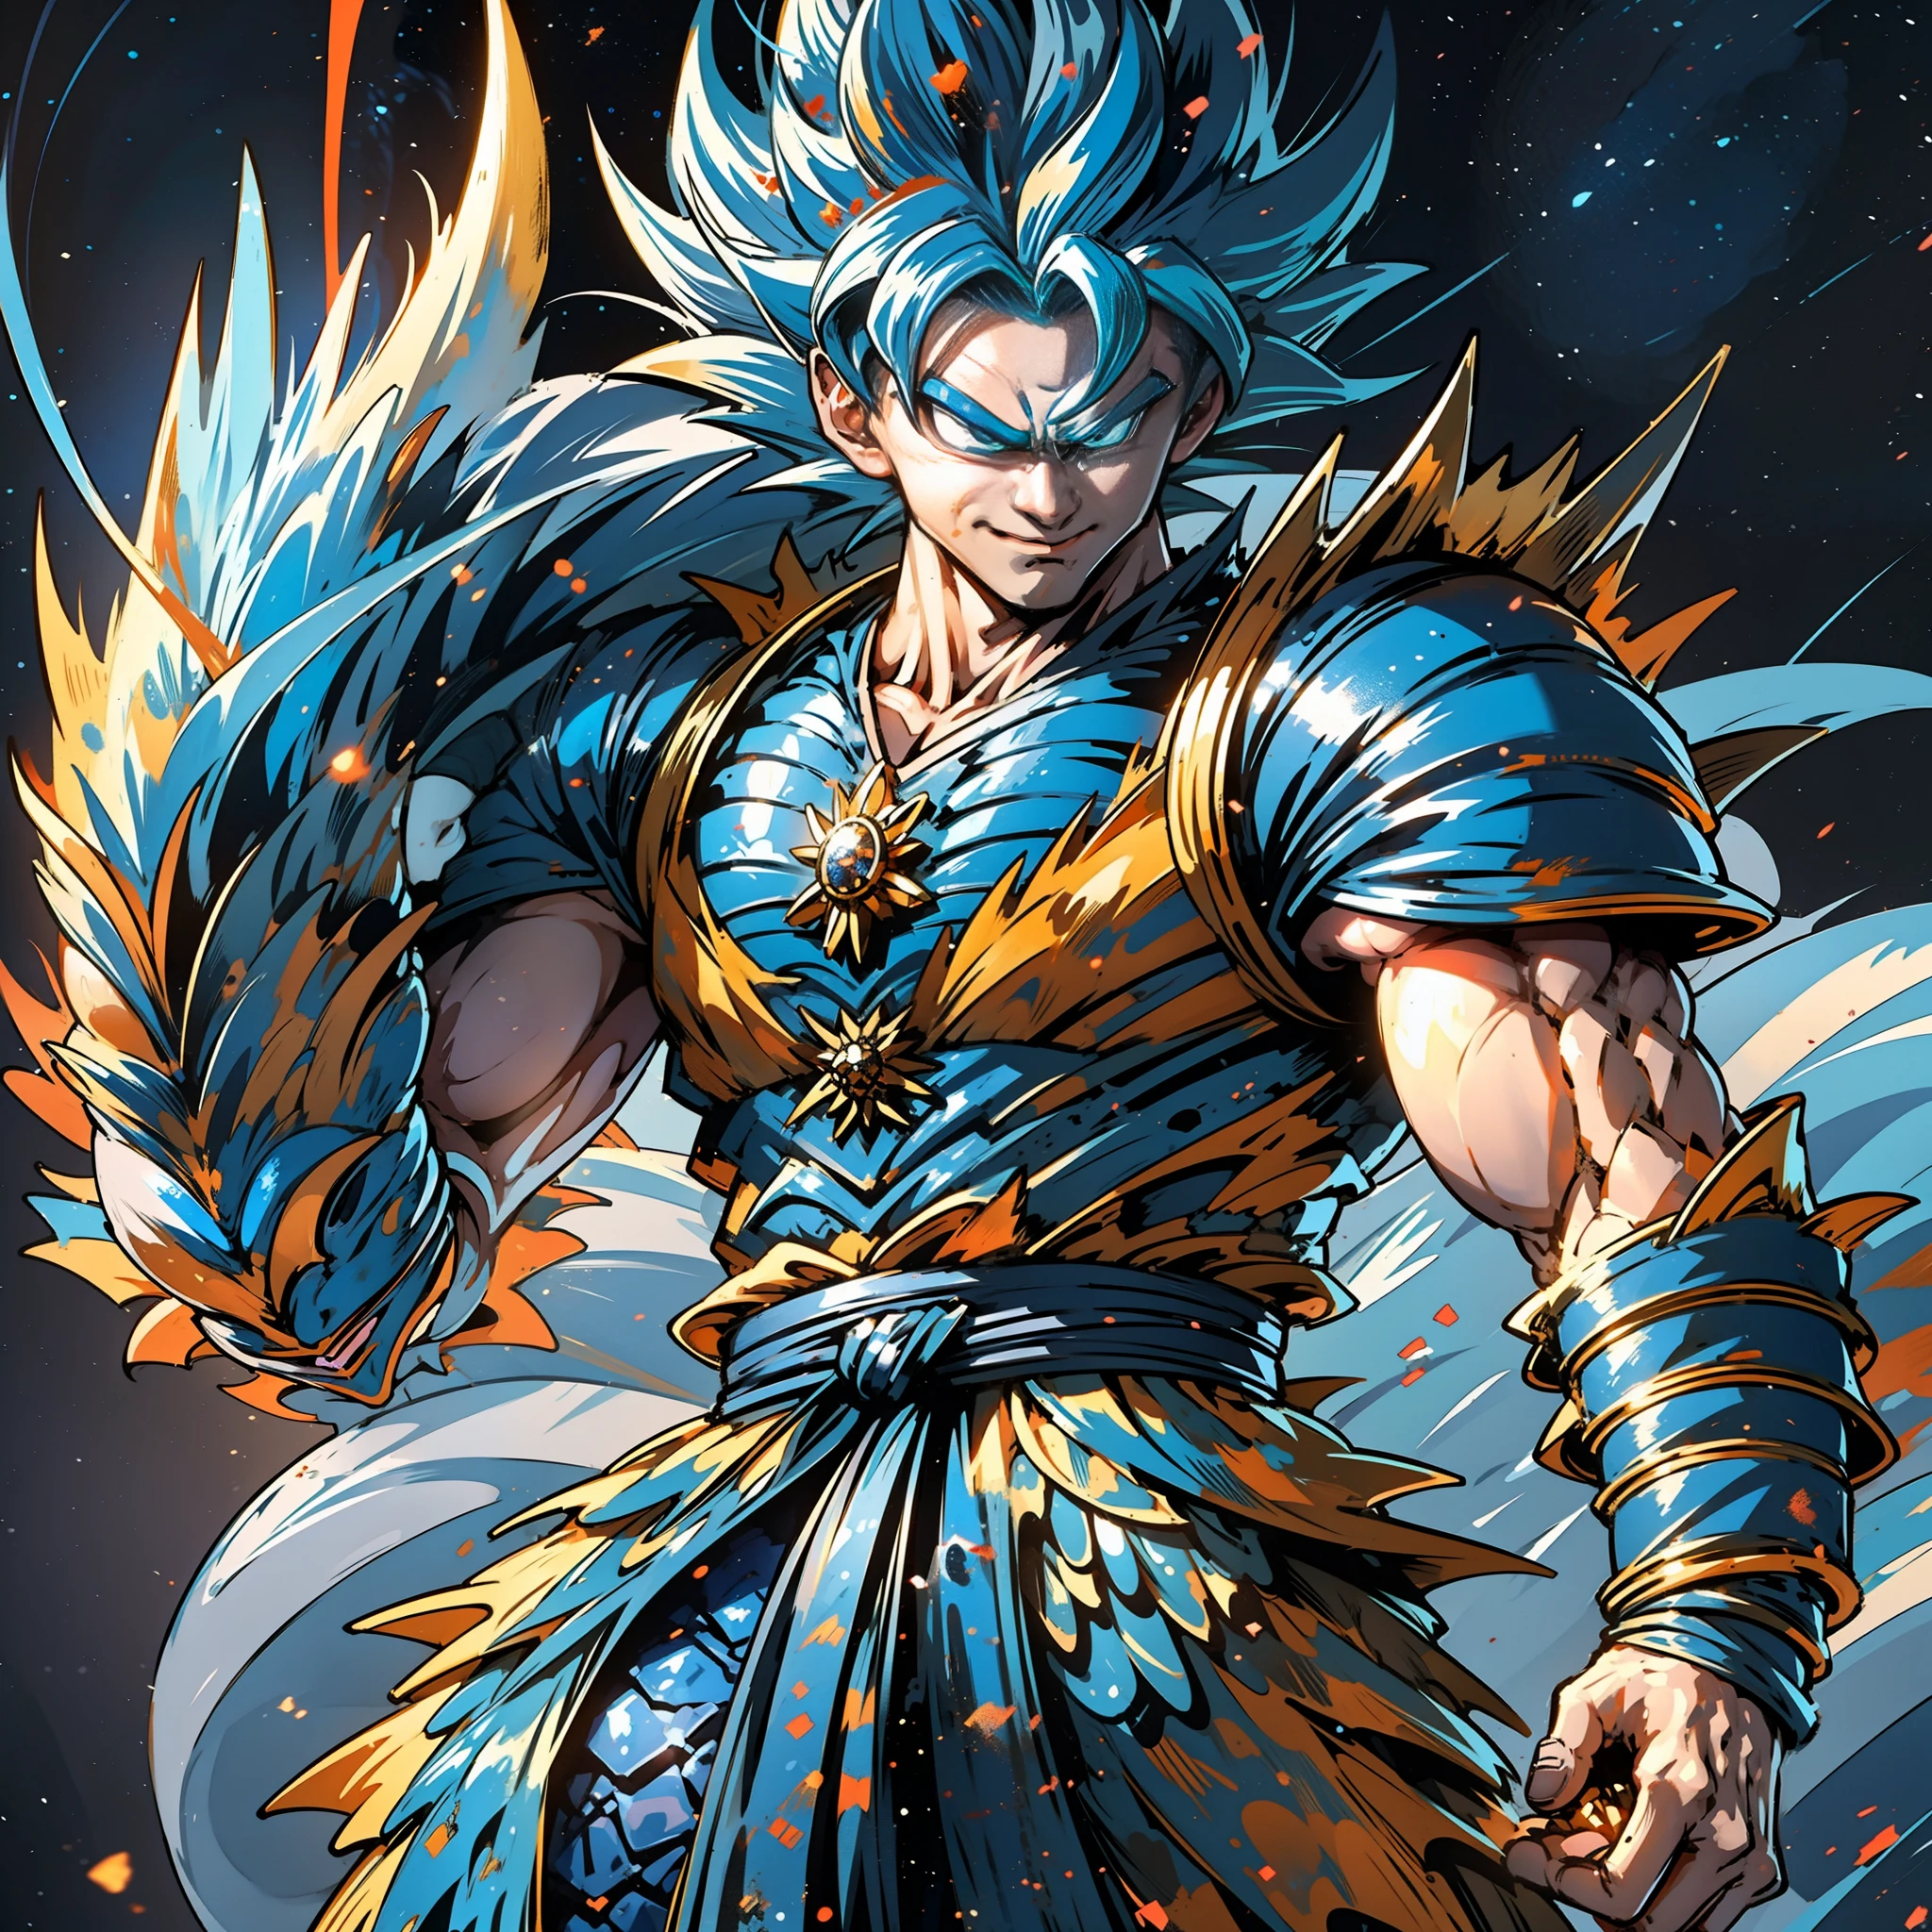 Em Dragon Ball, Son Goku veste uma armadura feita de escamas de dragão e explode com partículas de luz azul